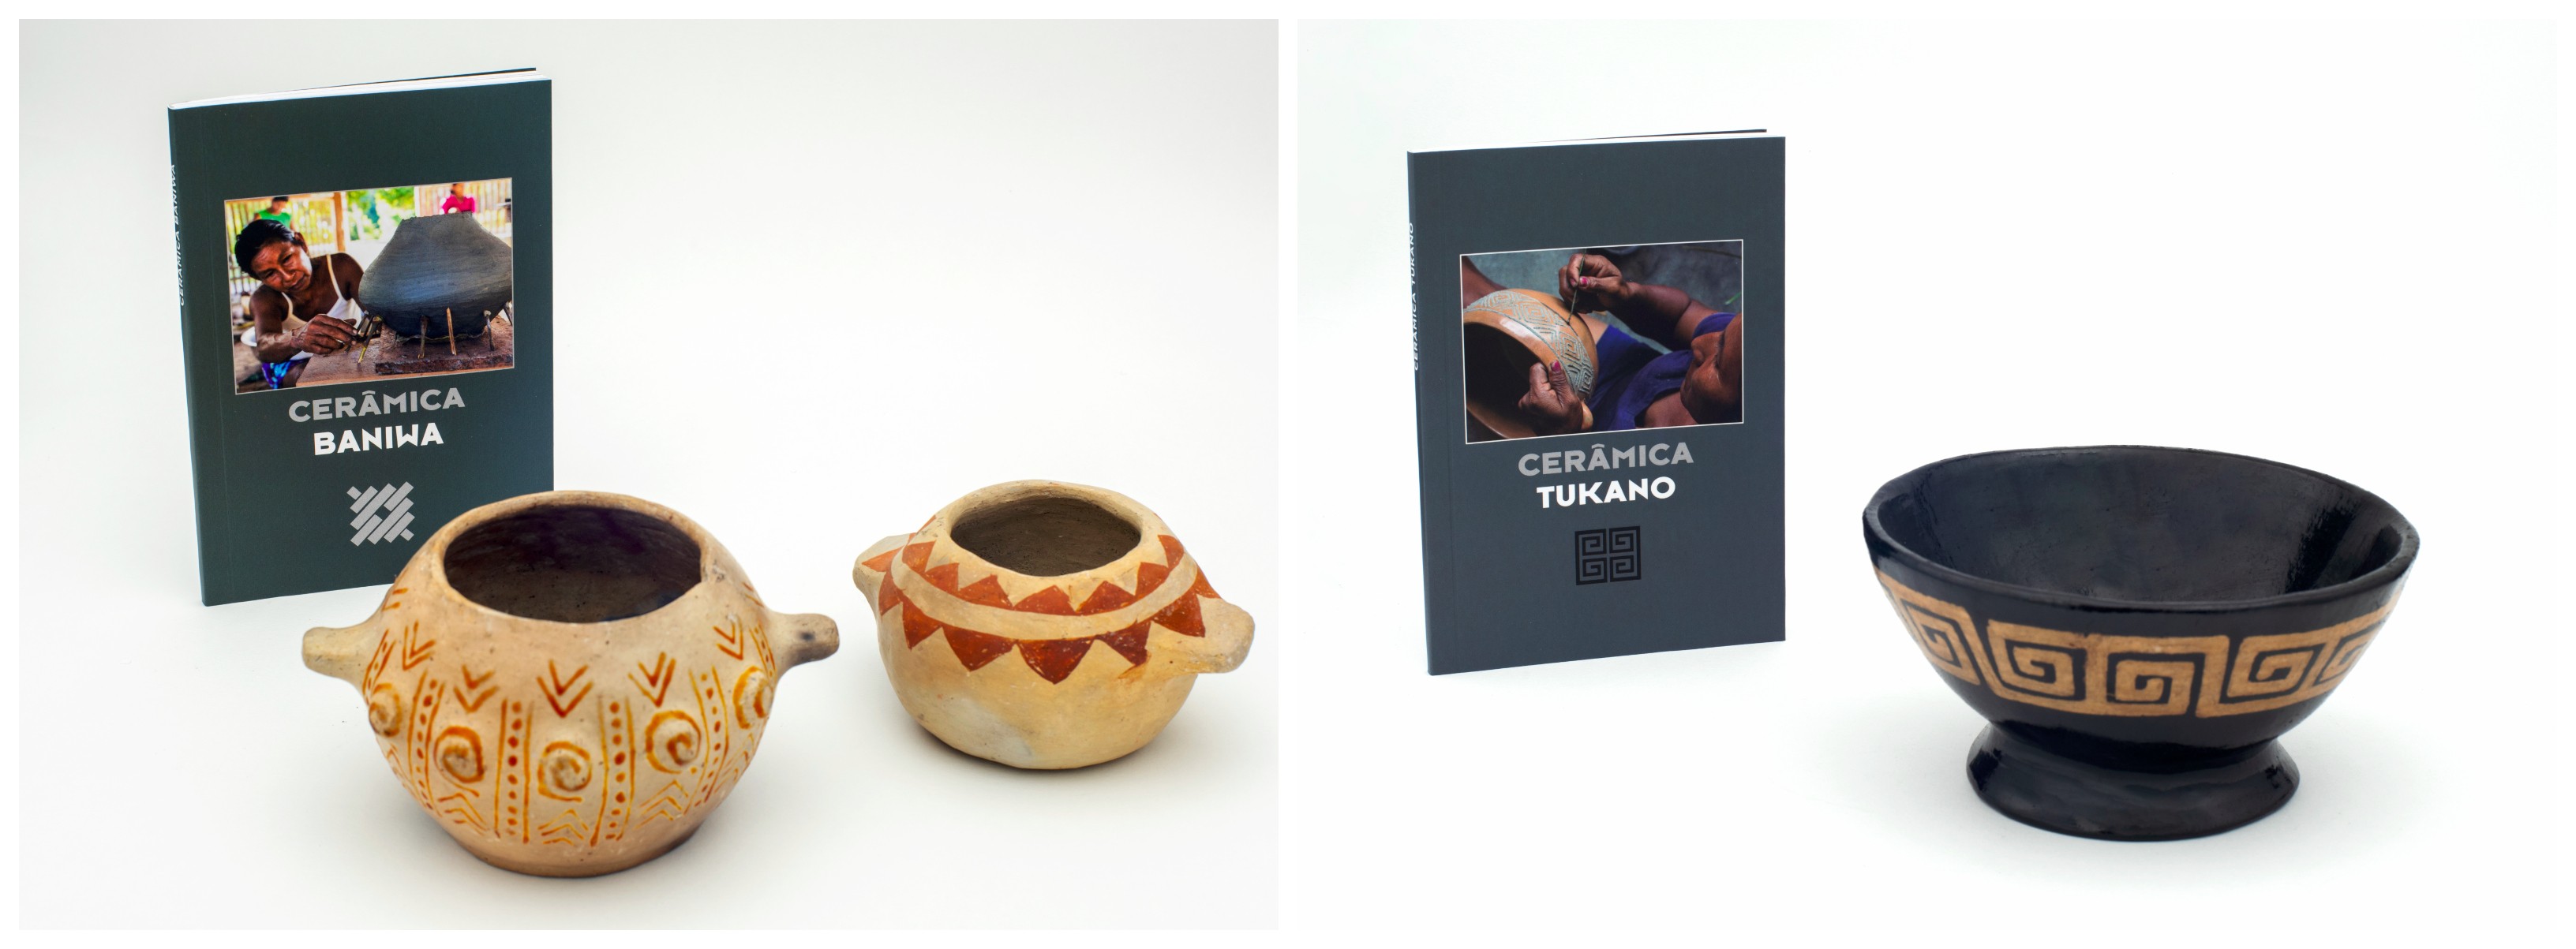 Livros sobre a Cerâmica Baniwa e Tukano realizados pelo ISA e FOIRN (Foto: Divulgação)